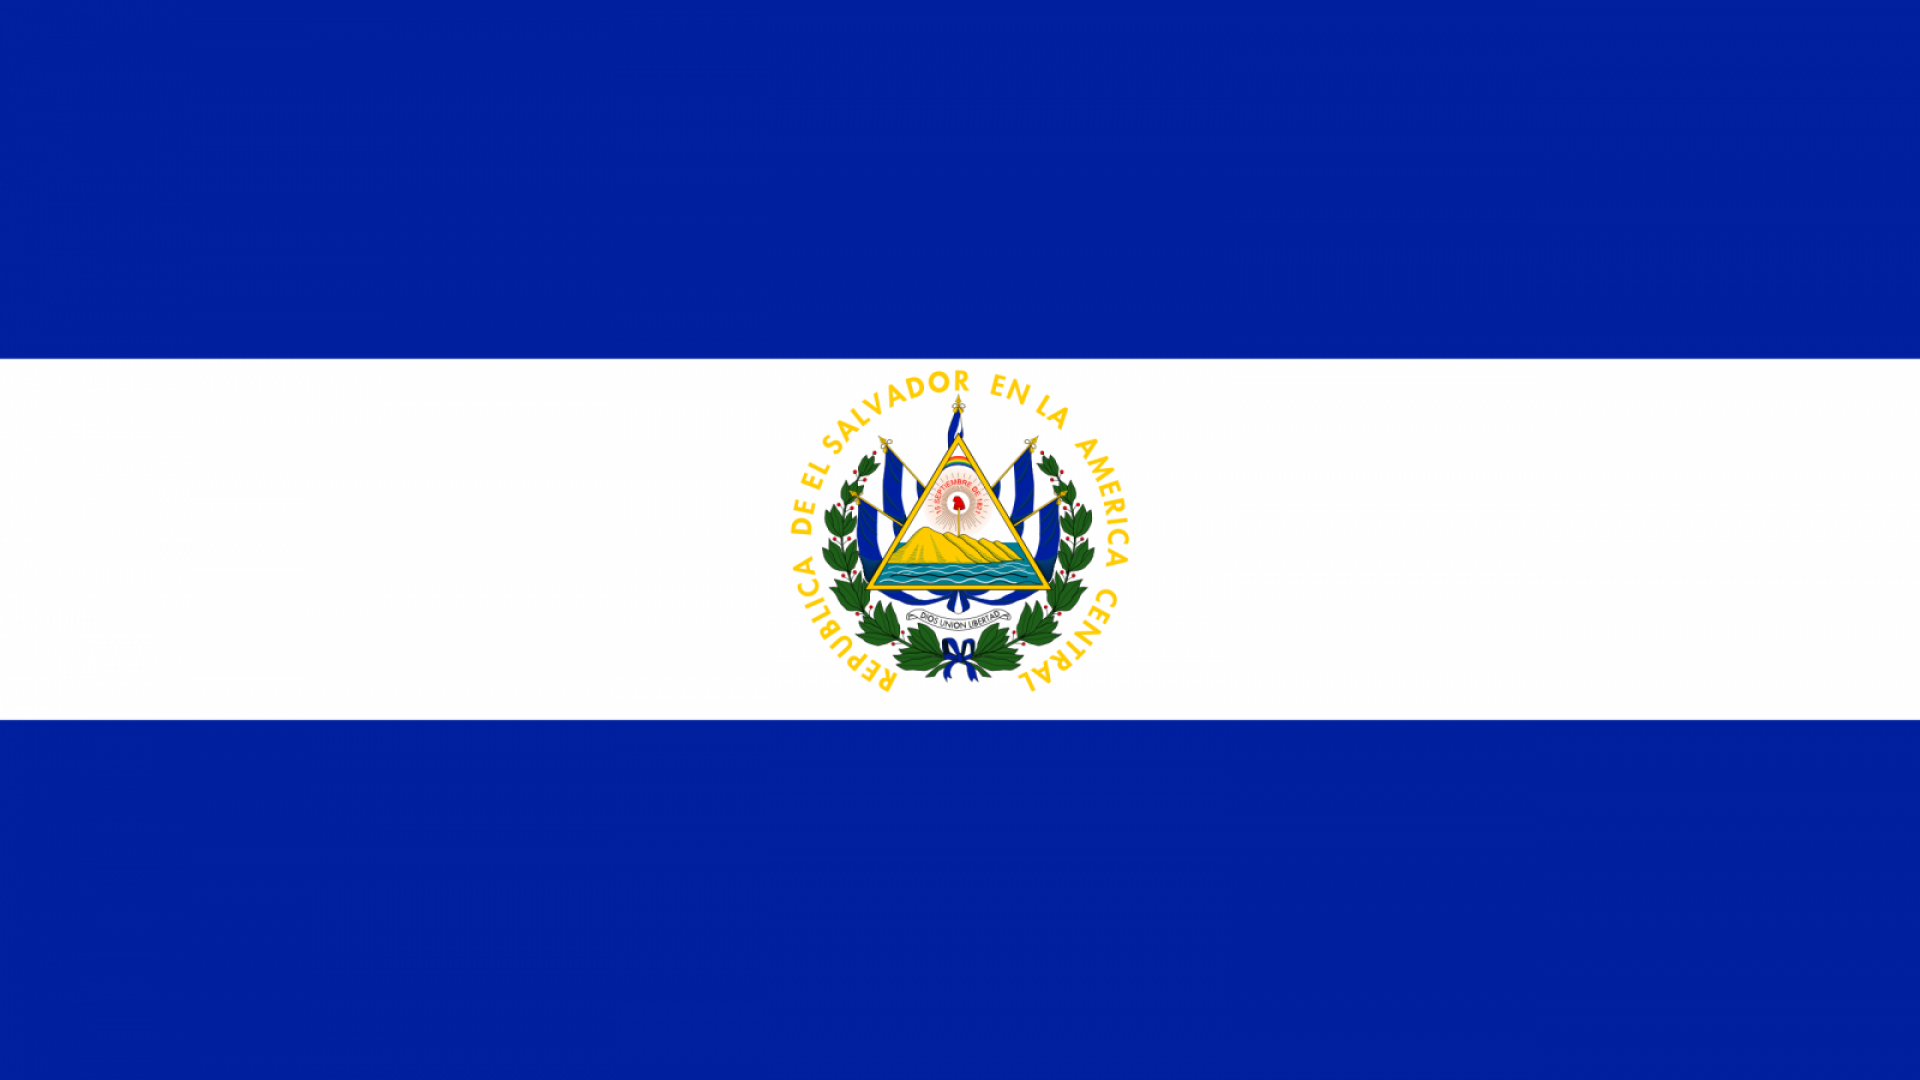 El Salvador Flag Wallpaper High Definition Quality